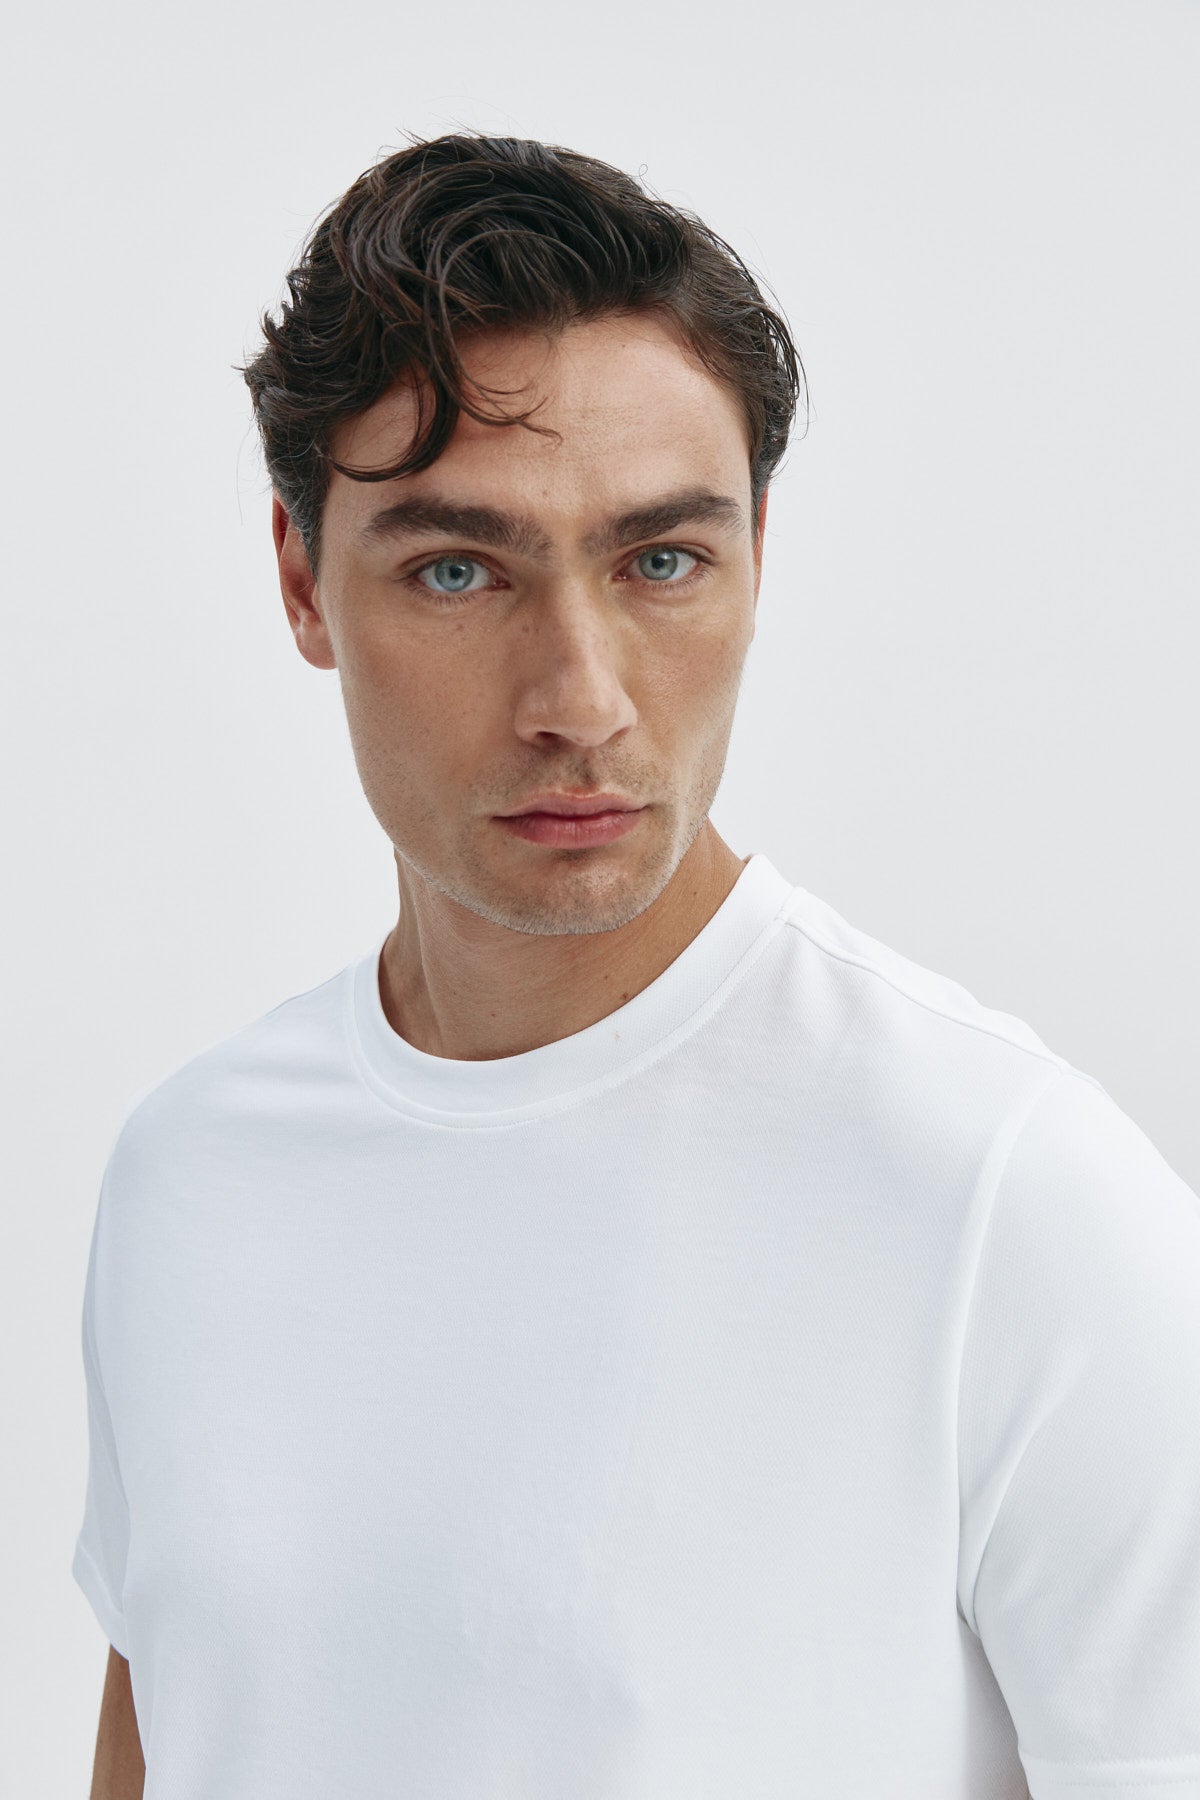 Camiseta de hombre blanca de manga corta, antiarrugas y antimanchas.Foto retrato.